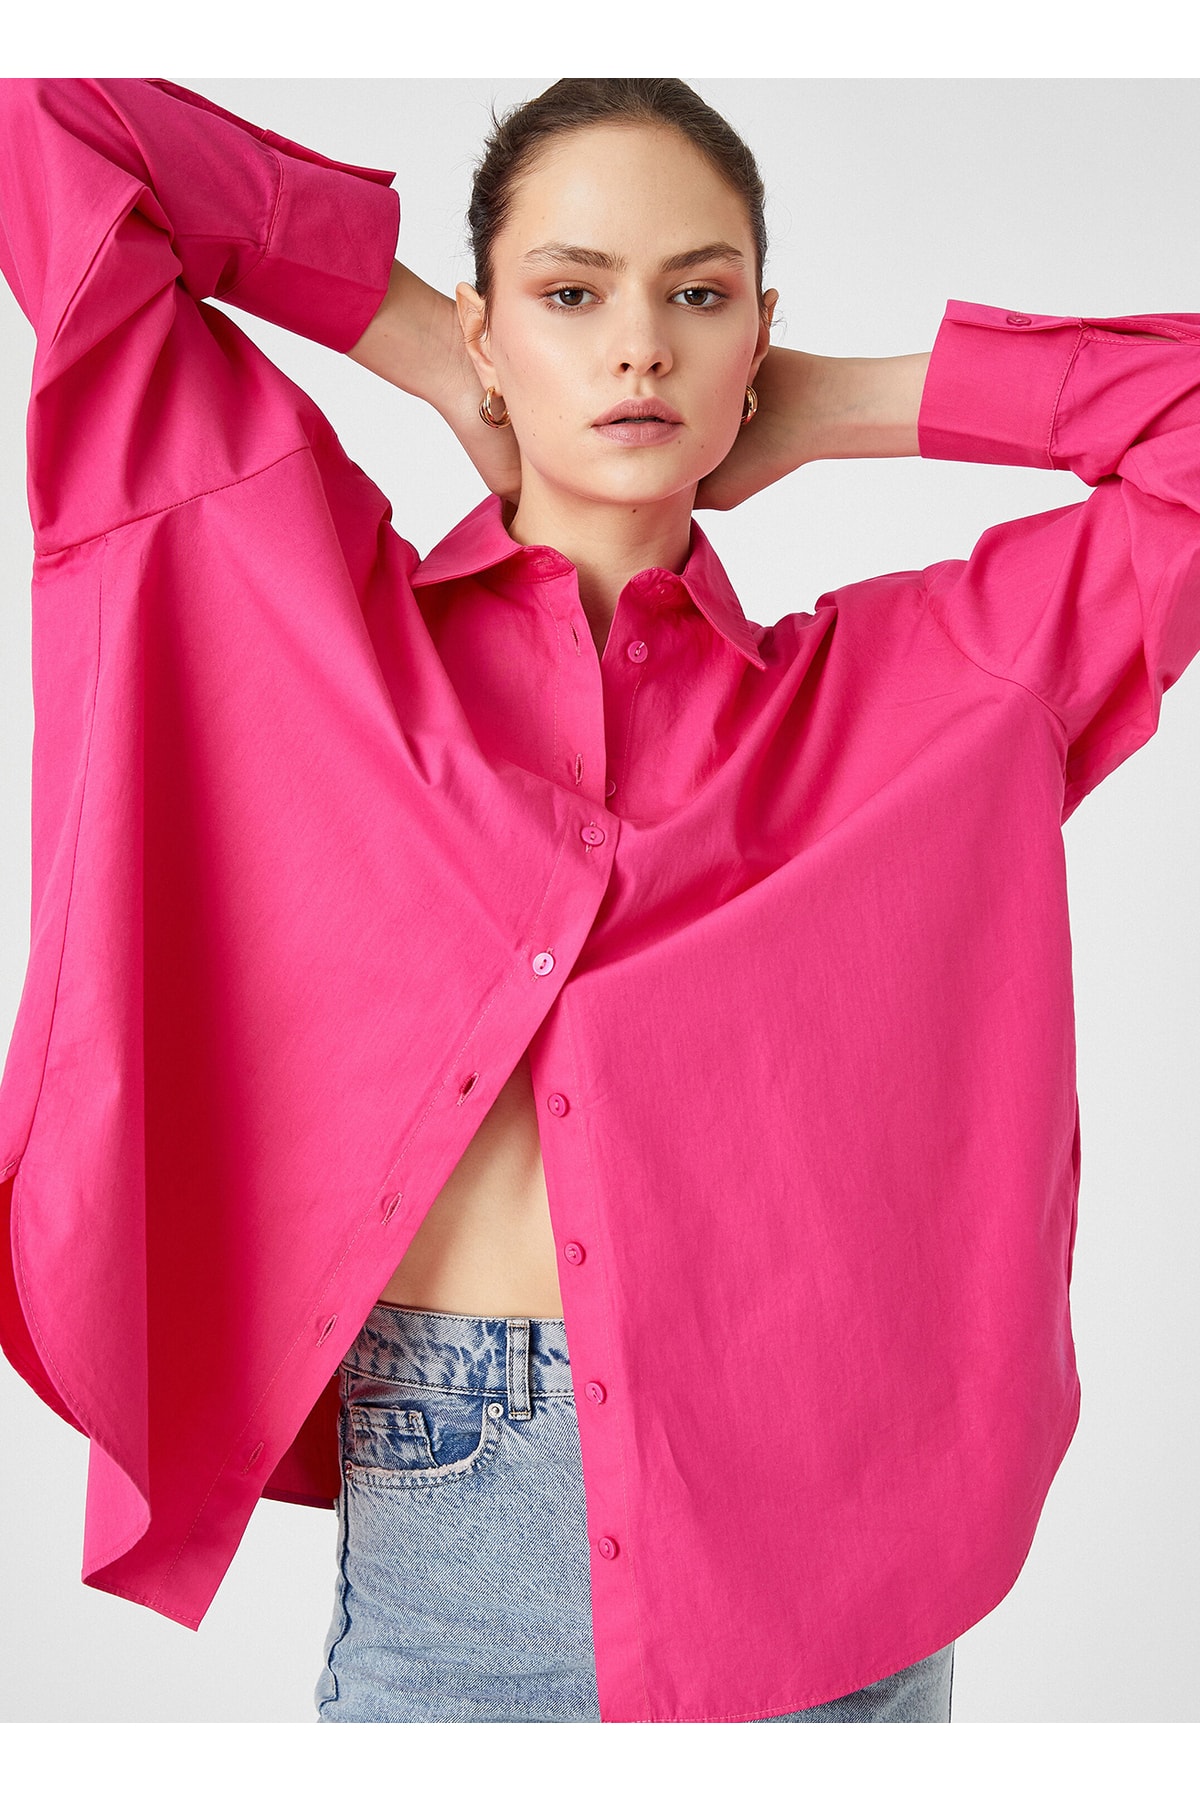 Koton Hemd Rosa Regular Fit Fast ausverkauft